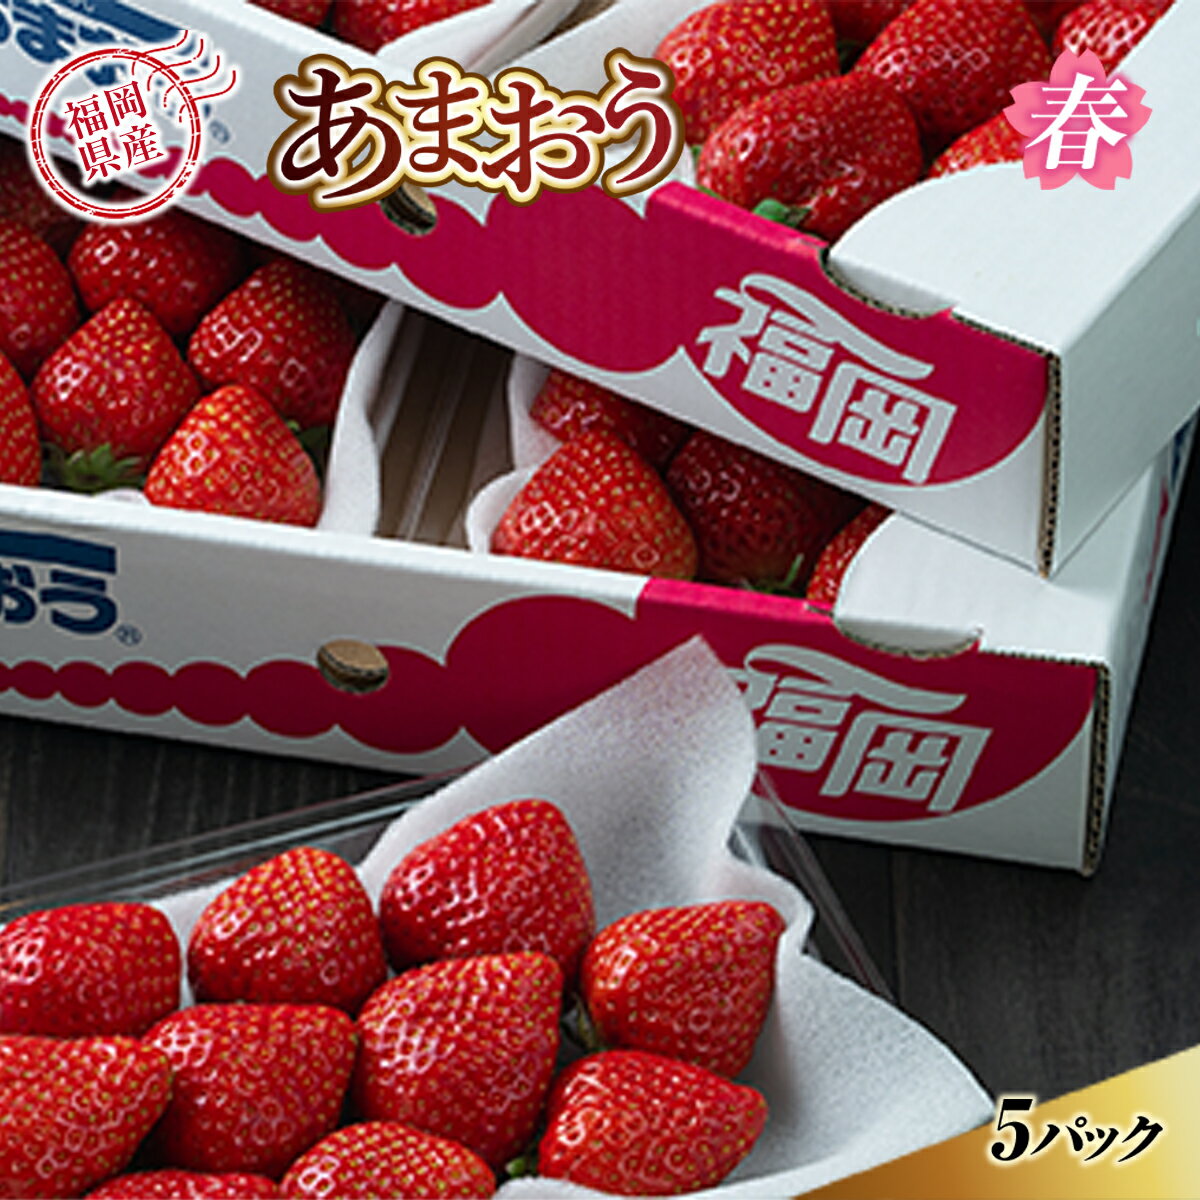 【ふるさと納税】あまおう 苺 イチゴ 送料無料 ギフト 福岡